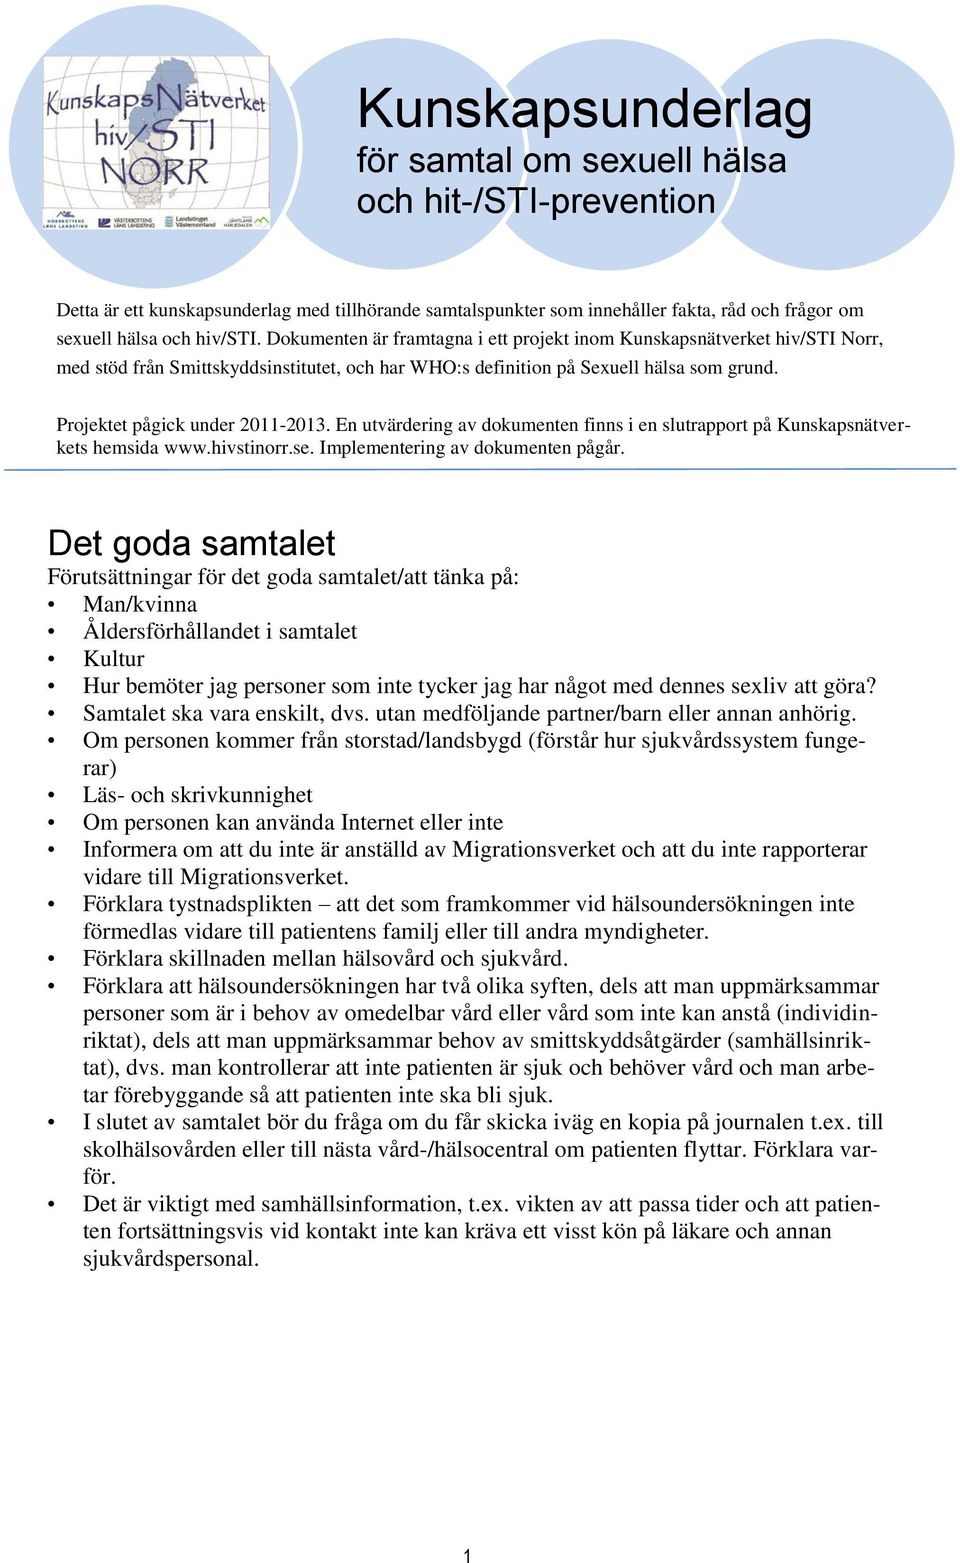 En utvärdering av dokumenten finns i en slutrapport på Kunskapsnätverkets hemsida www.hivstinorr.se. Implementering av dokumenten pågår.